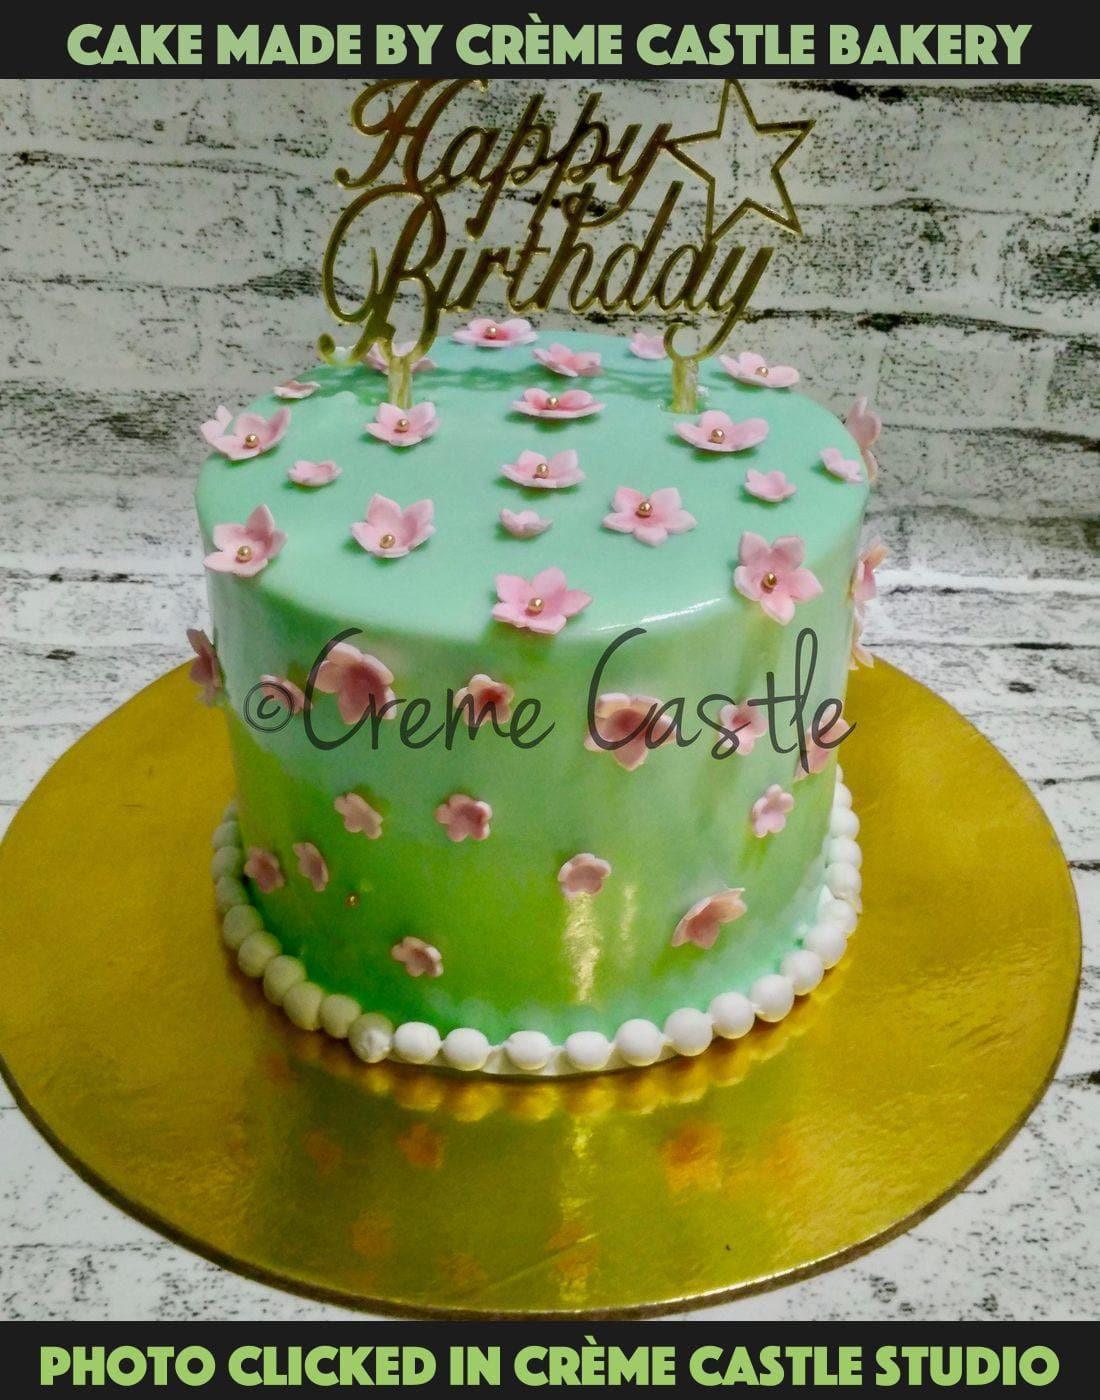 Blue floral cake - Creme Castle